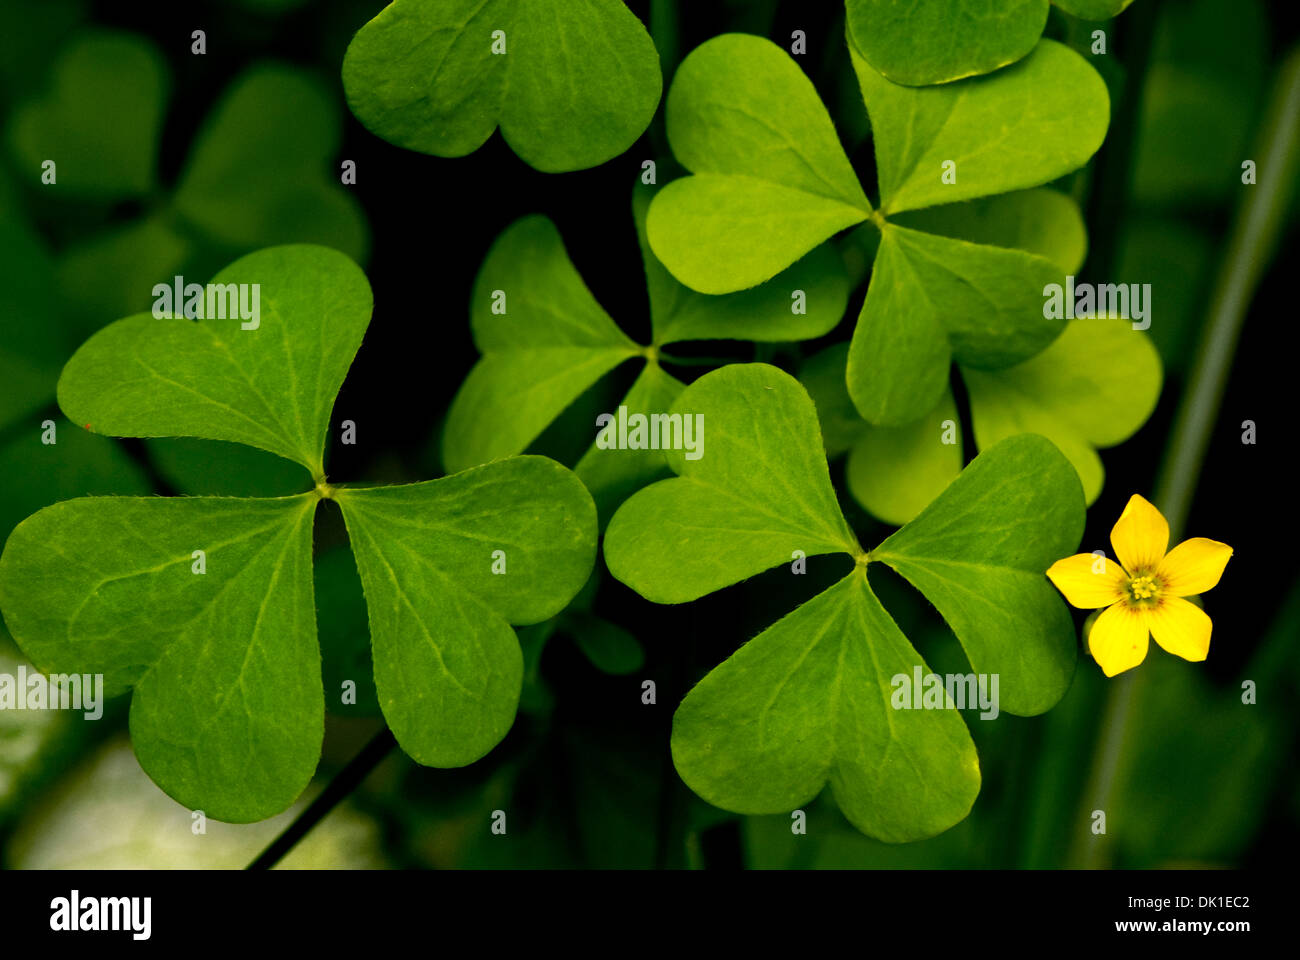 Sehr großen grünen Klee mit einem kleinen fünf doppelseitige Stern förmigen gelben Blume. Stockfoto